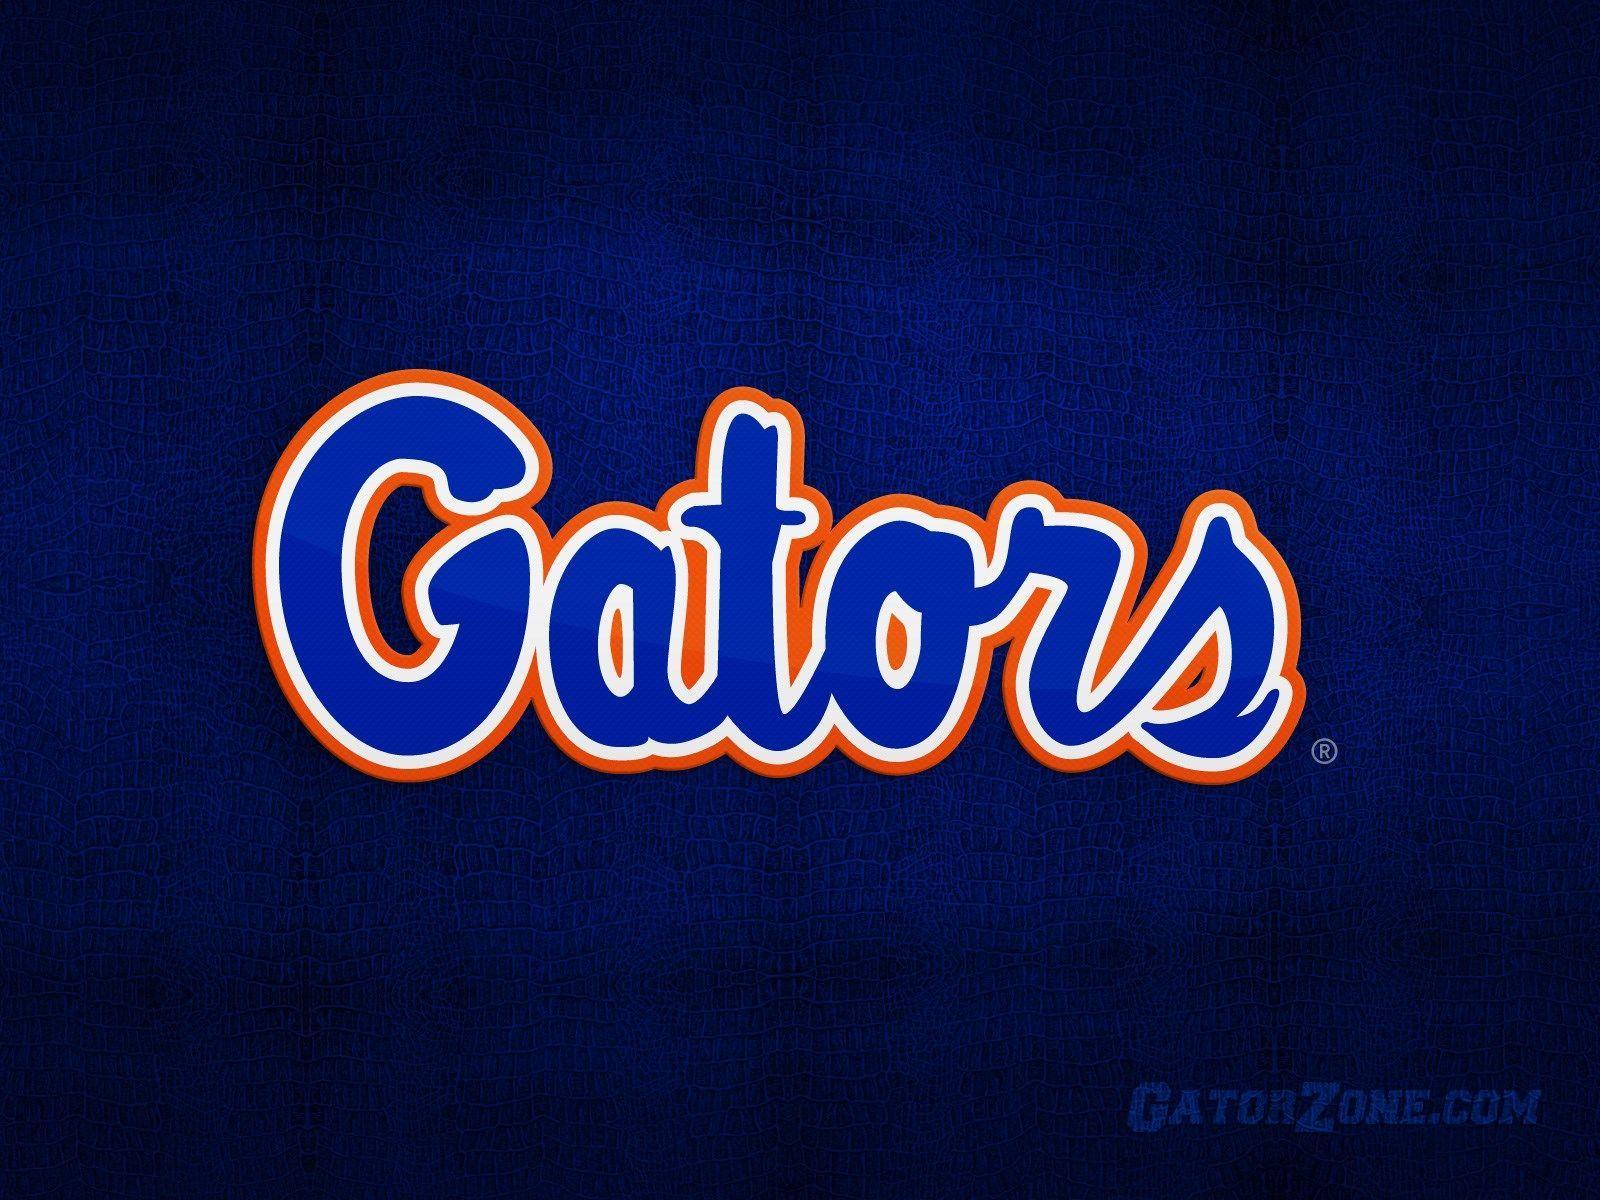 Gators Softball Logo - widescreen HD florida gators. SEC CONFERENCE. Florida gators